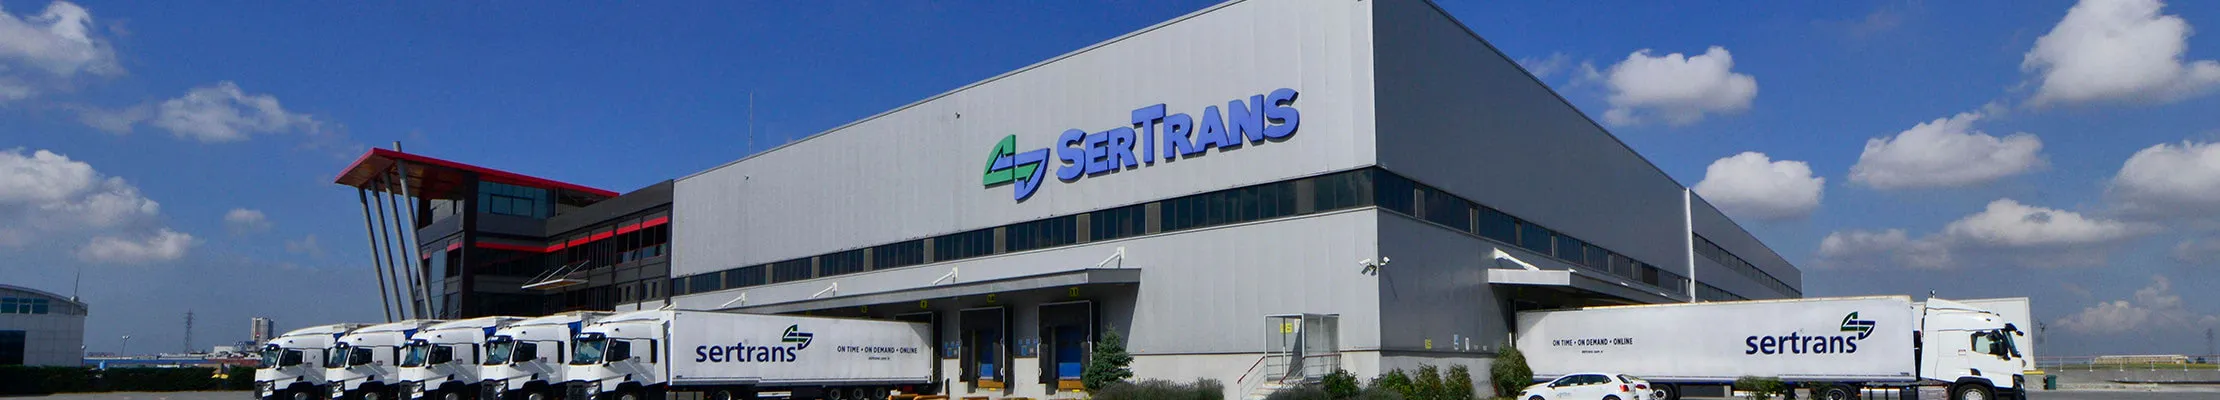 Sertrans Logistics milyonlarca ürün kapasitesiyle global markaların yıllardır tercihidir.